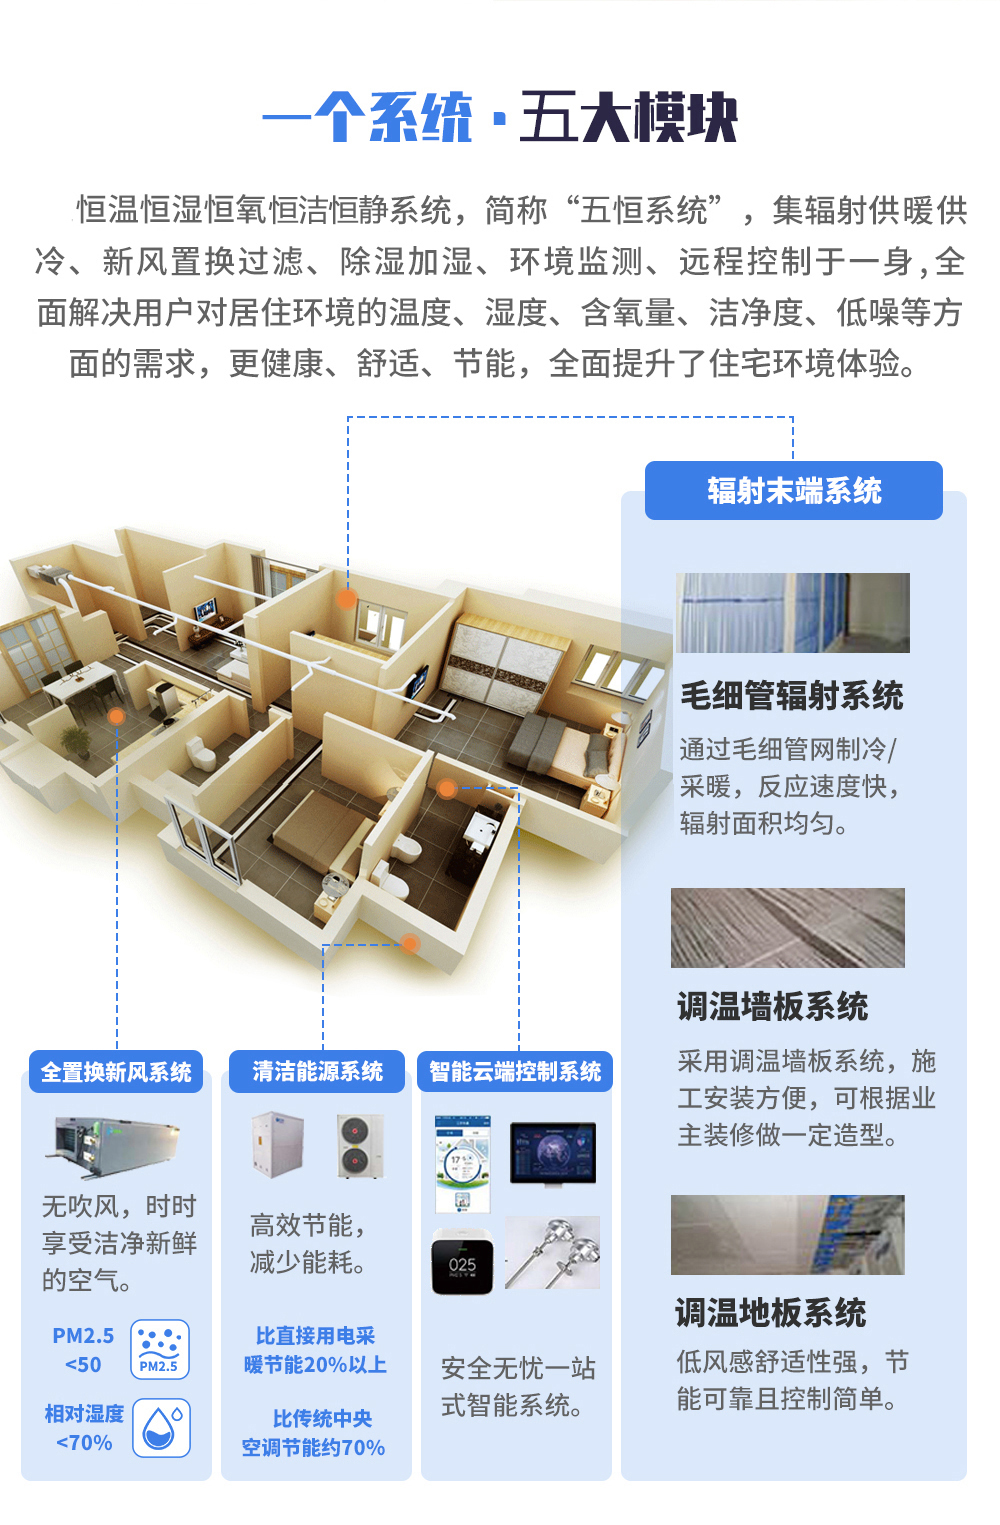 北京市毛细管网空调厂家供应毛细管网空调